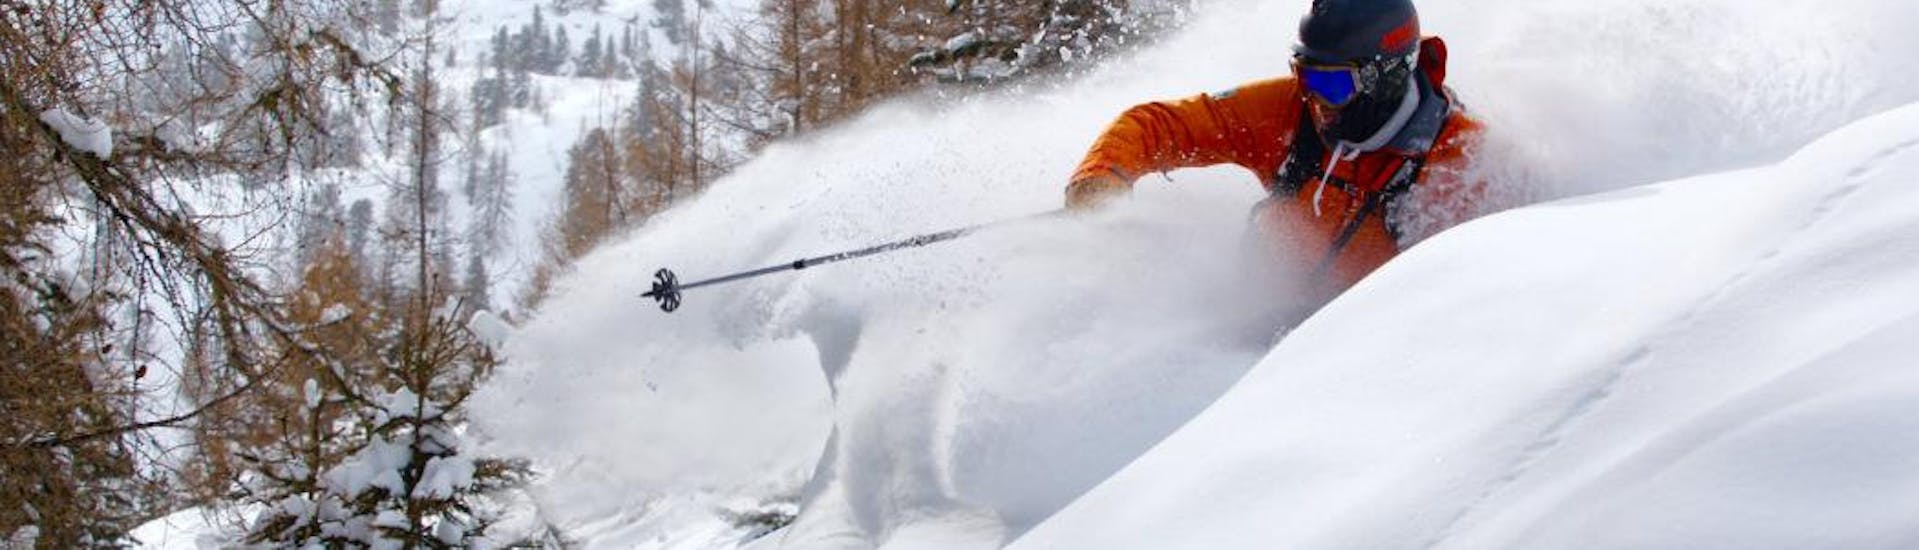 Ein Skifahrer fährt die Hänge hinunter, während er mit der Skischule Zenit private Freeride Touren für alle Levels unternimmt.